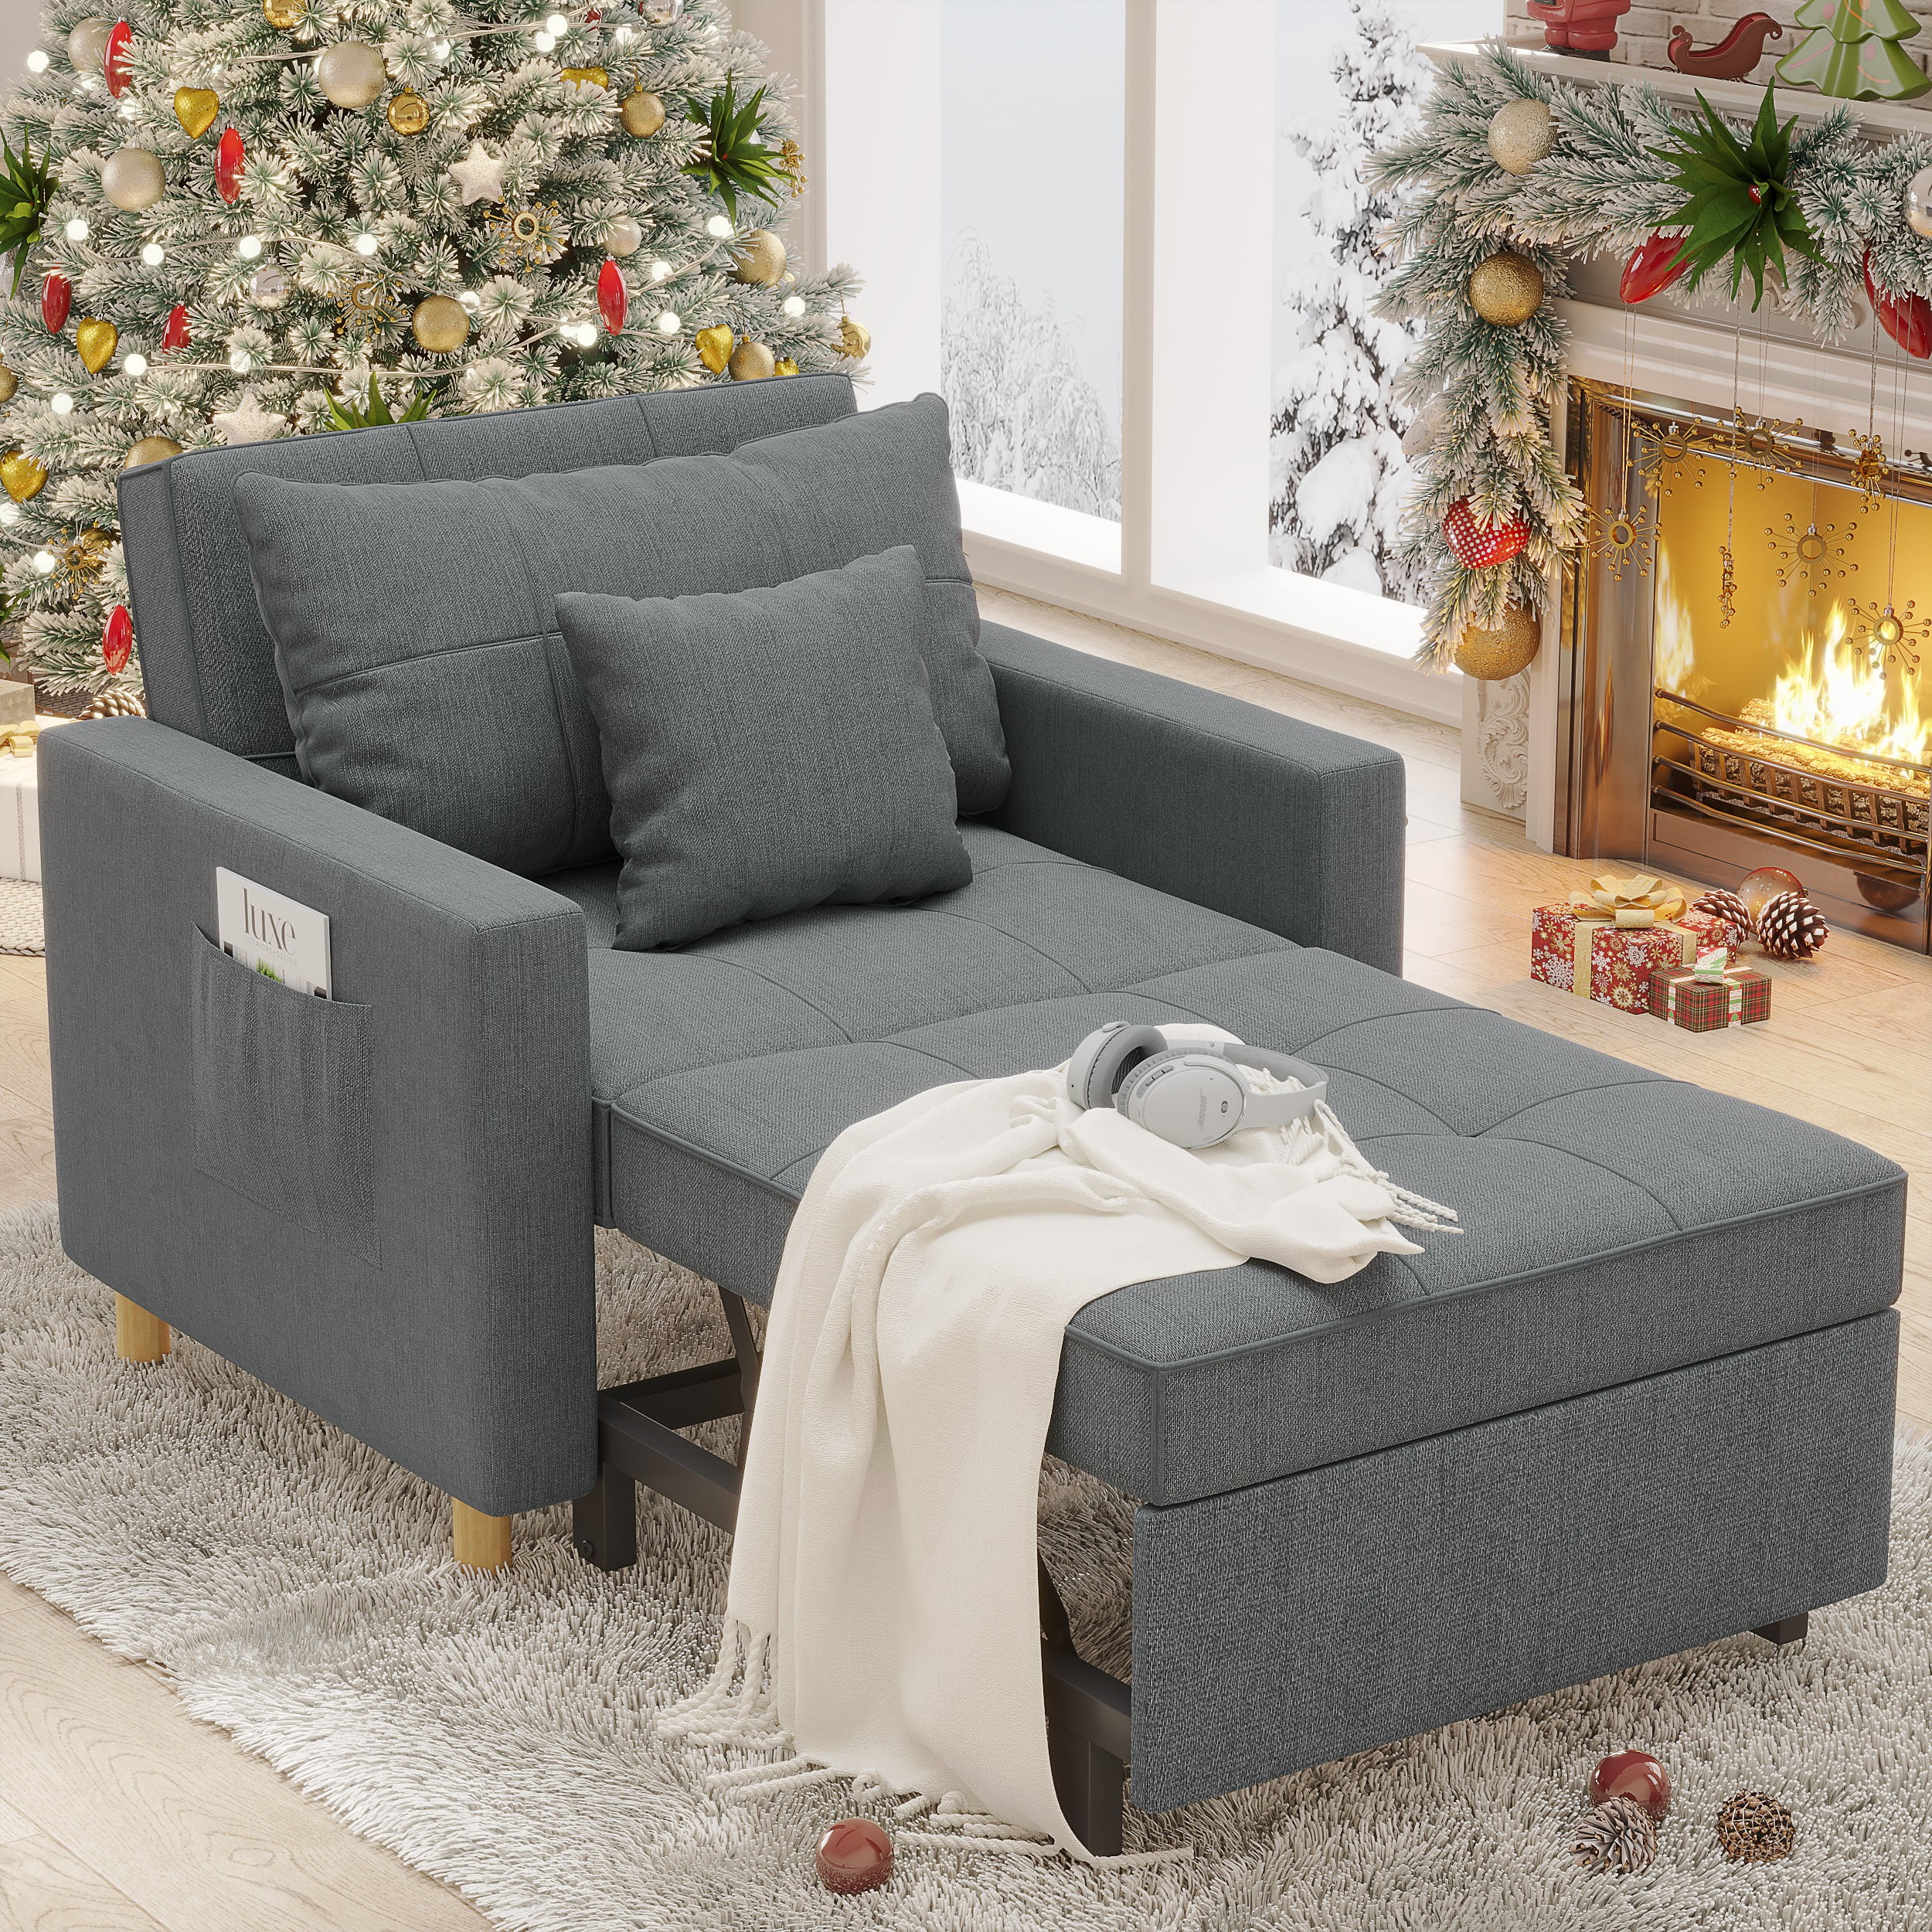 YODOLLA Silla futón, silla convertible 3 en 1 para adultos, sofá cama  extraíble con respaldo ajustable, sofá, tumbona, cama individual, silla